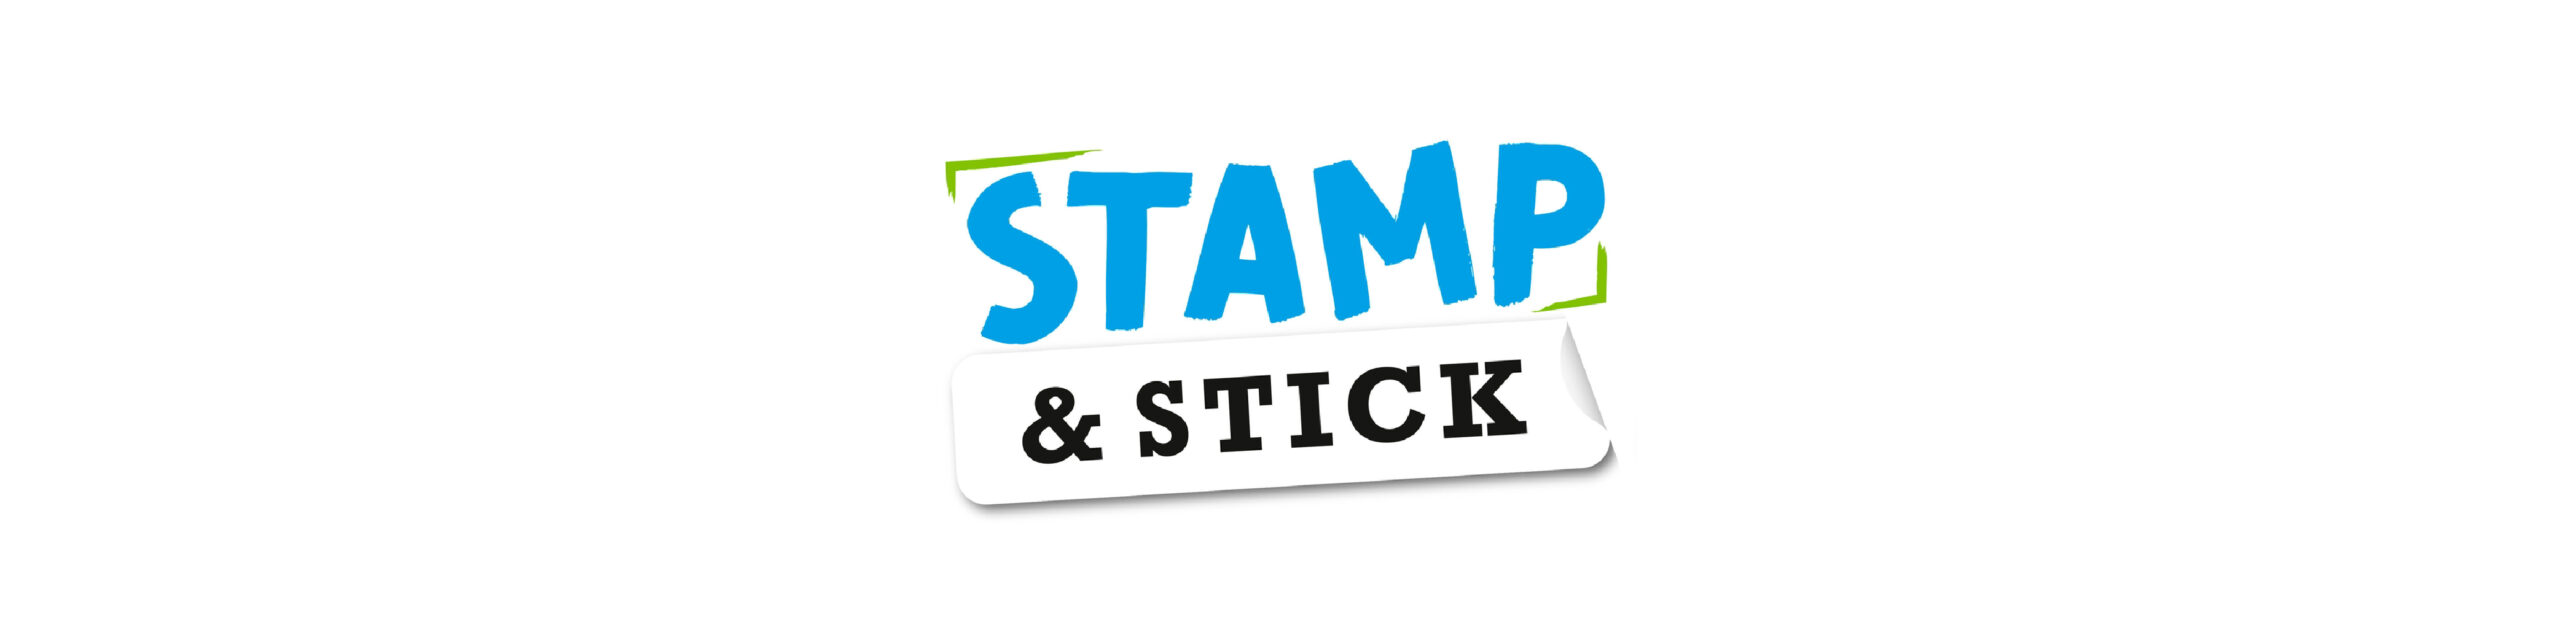 Σφραγίδα για ύφασμα STAMP ‘N STICK